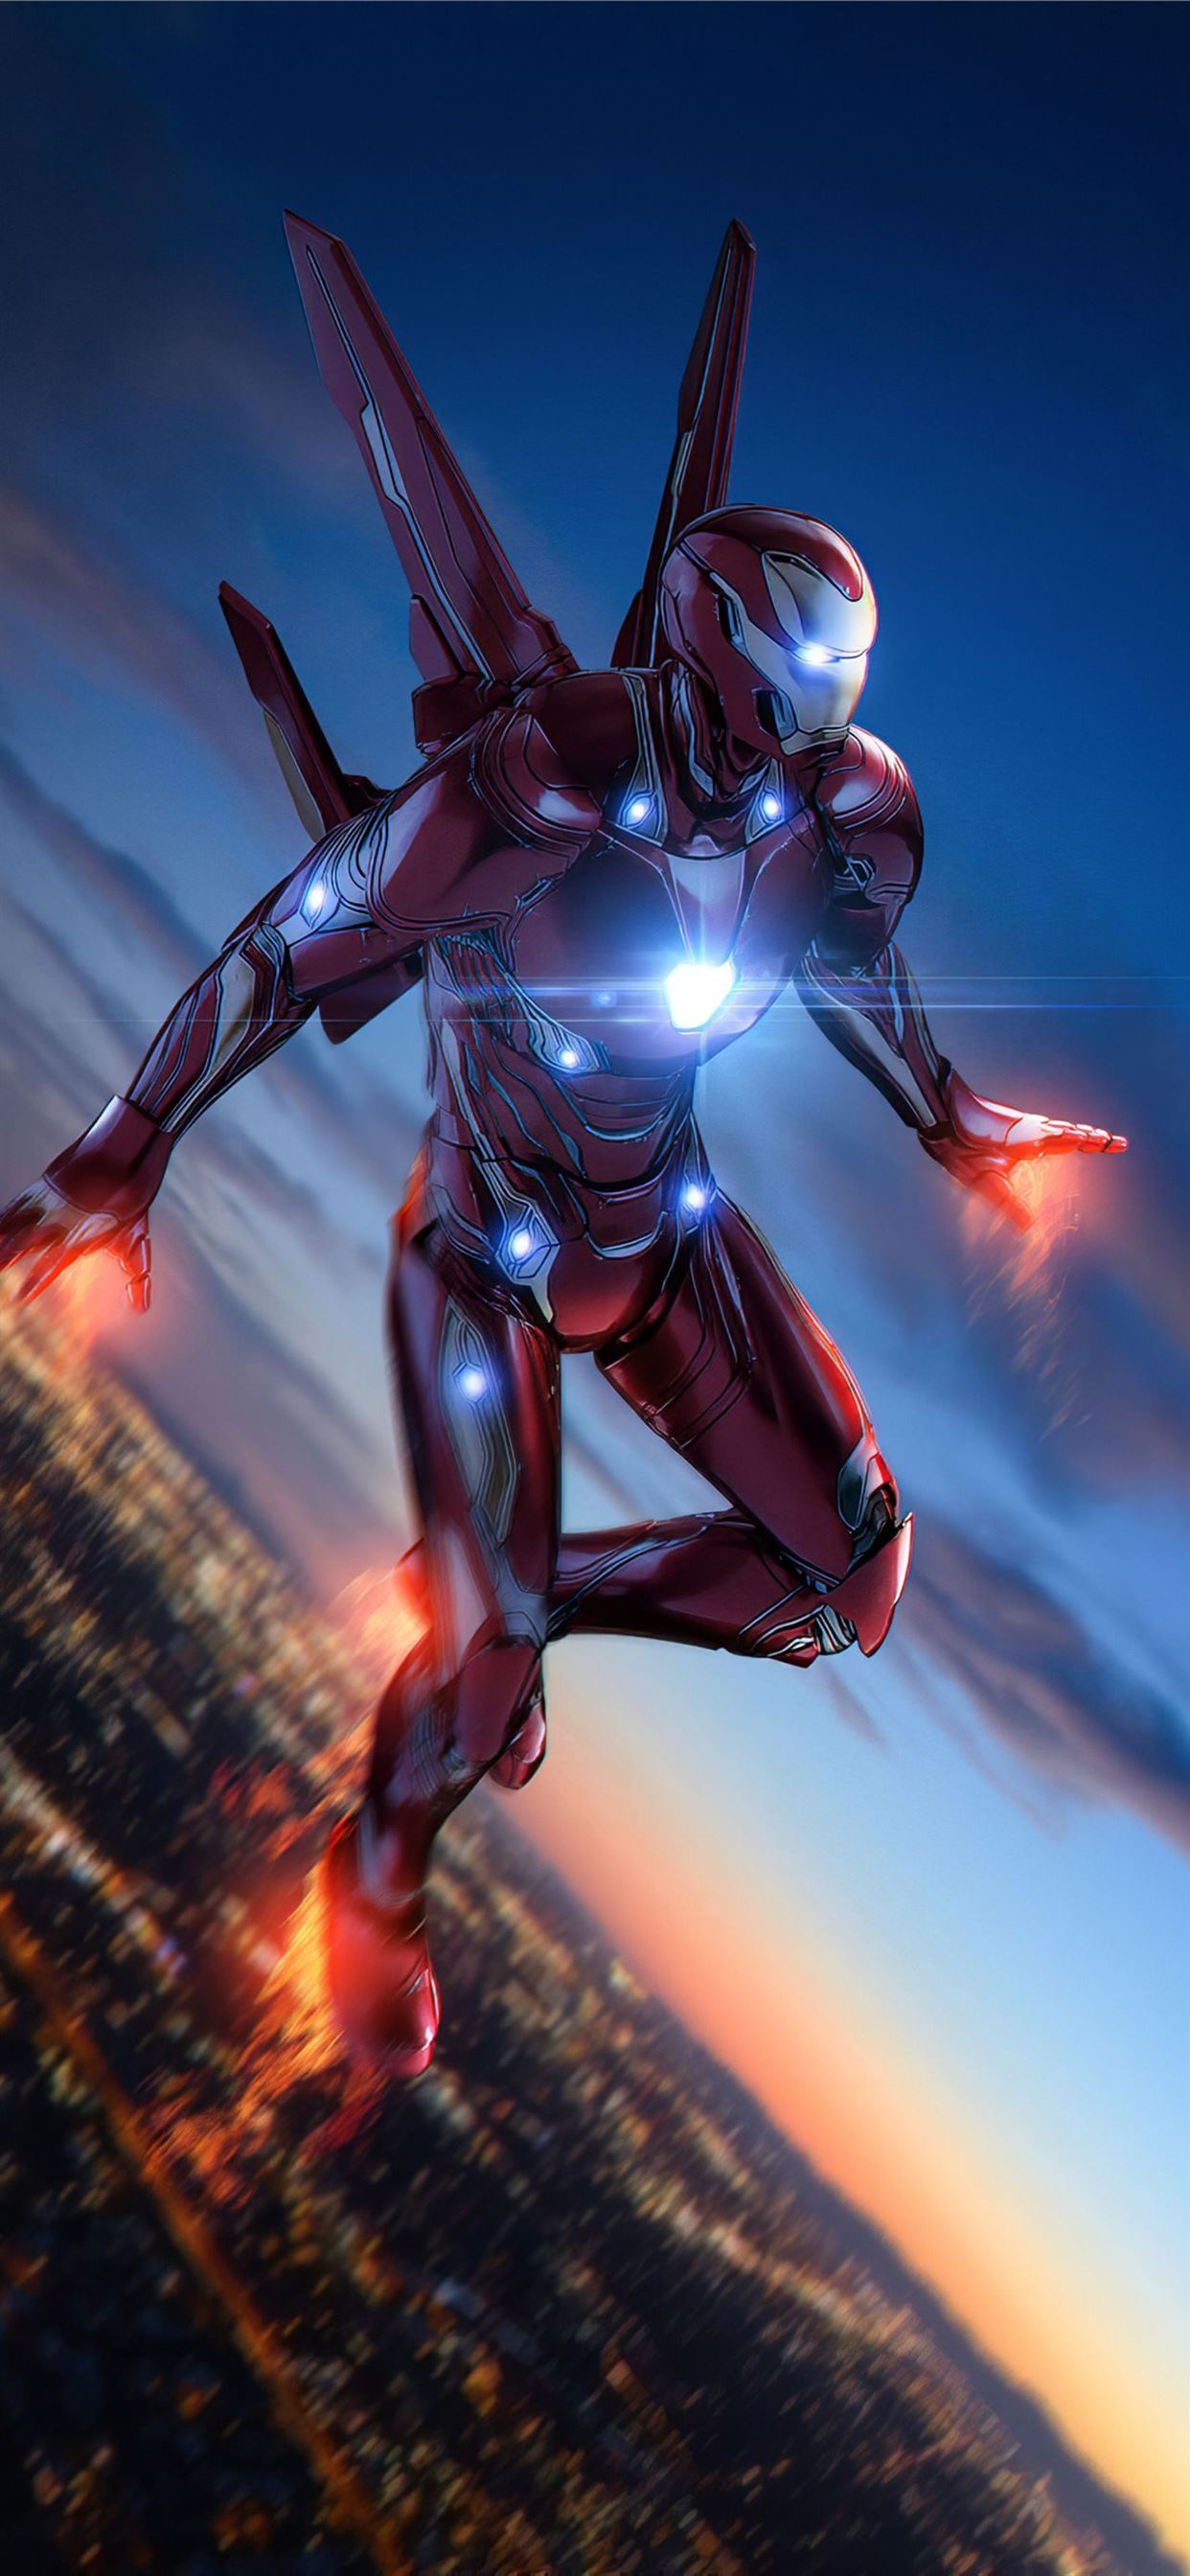 Iron Man Fight 4K iPhone Wallpaper  Marvel iron man Iron man hd wallpaper  Iron man